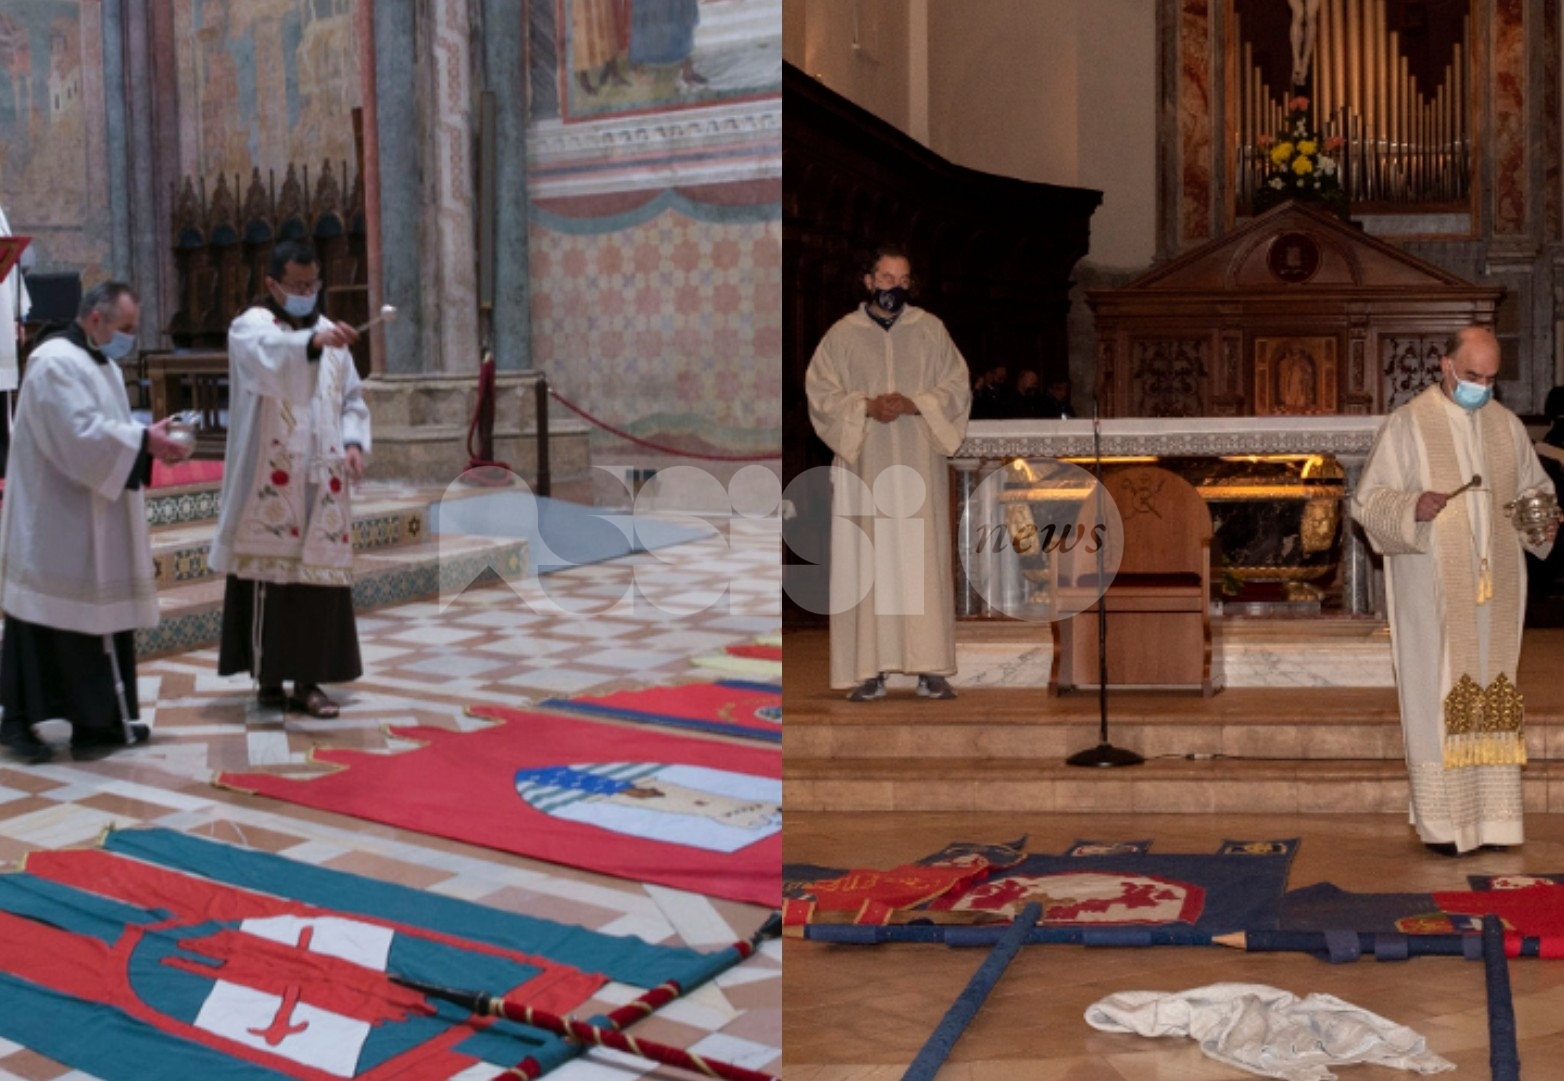 Calendimaggio di Assisi 2021, Magnifica e Nobilissima non fermano la tradizione (foto)